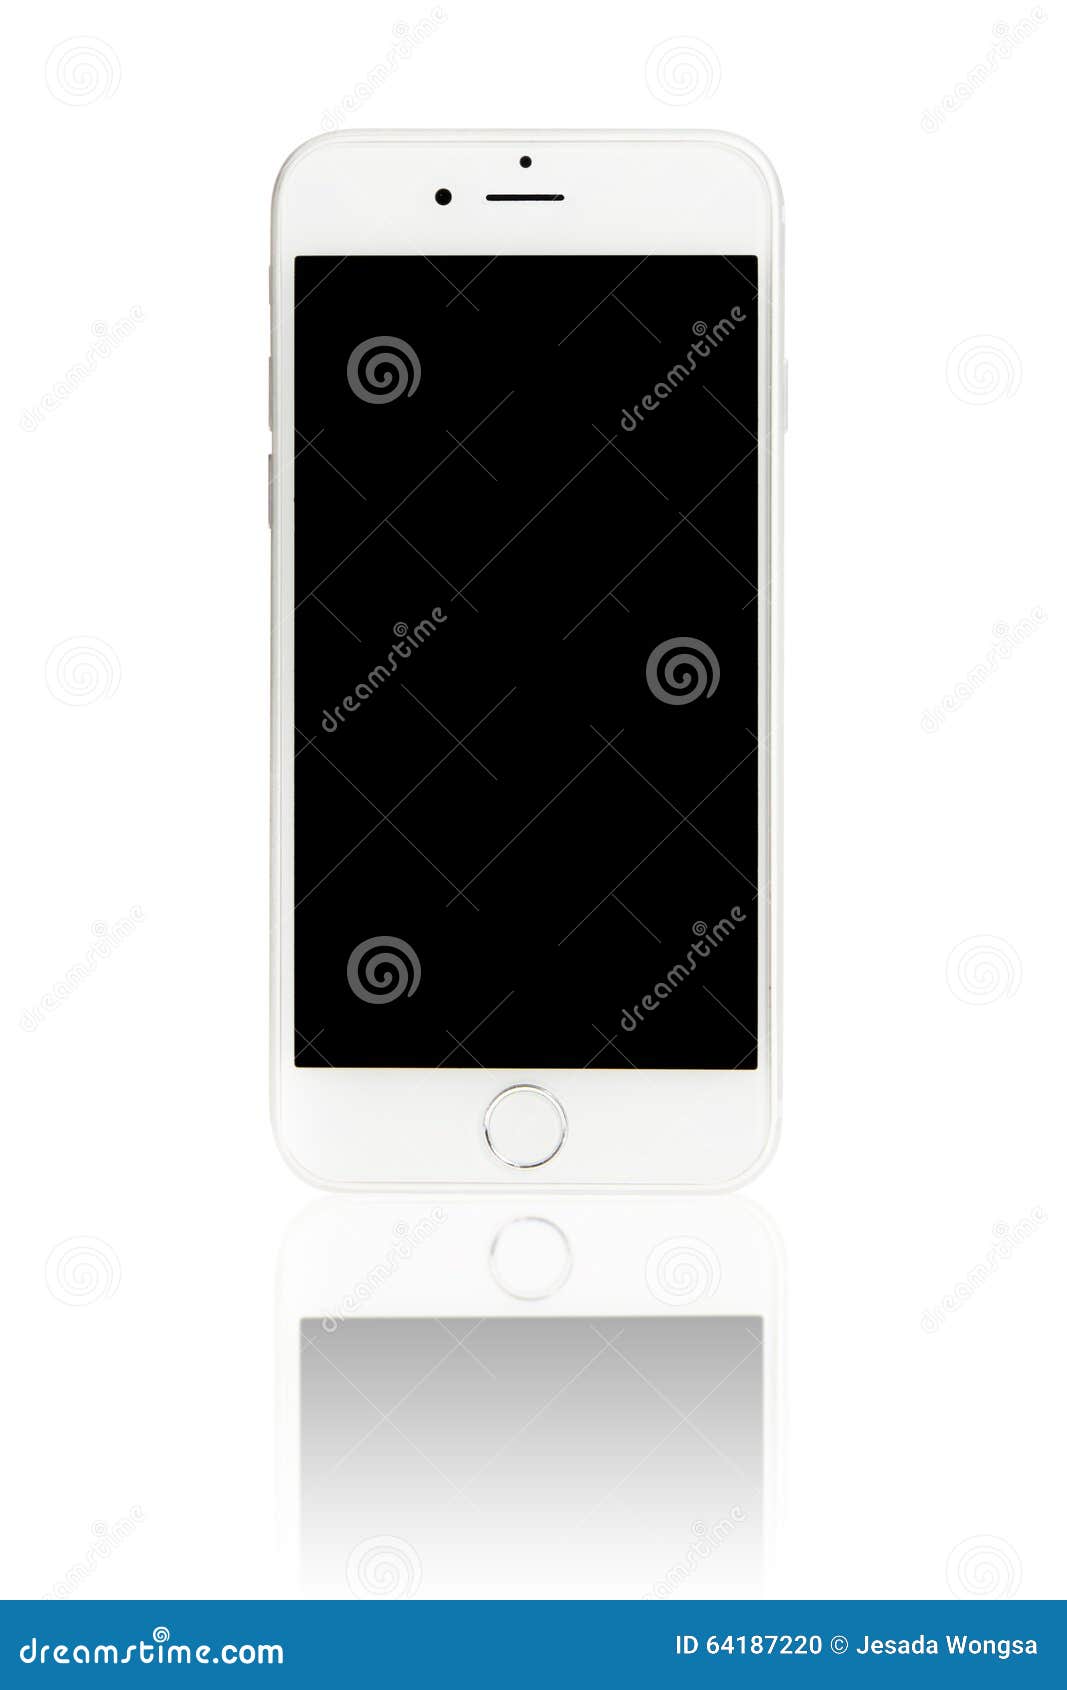 曼谷 泰国 15年12月22日 在白色背景的苹果计算机iphone 6关闭了与黑显示iphone 6s 编辑类图片 图片包括有卖主 Aº